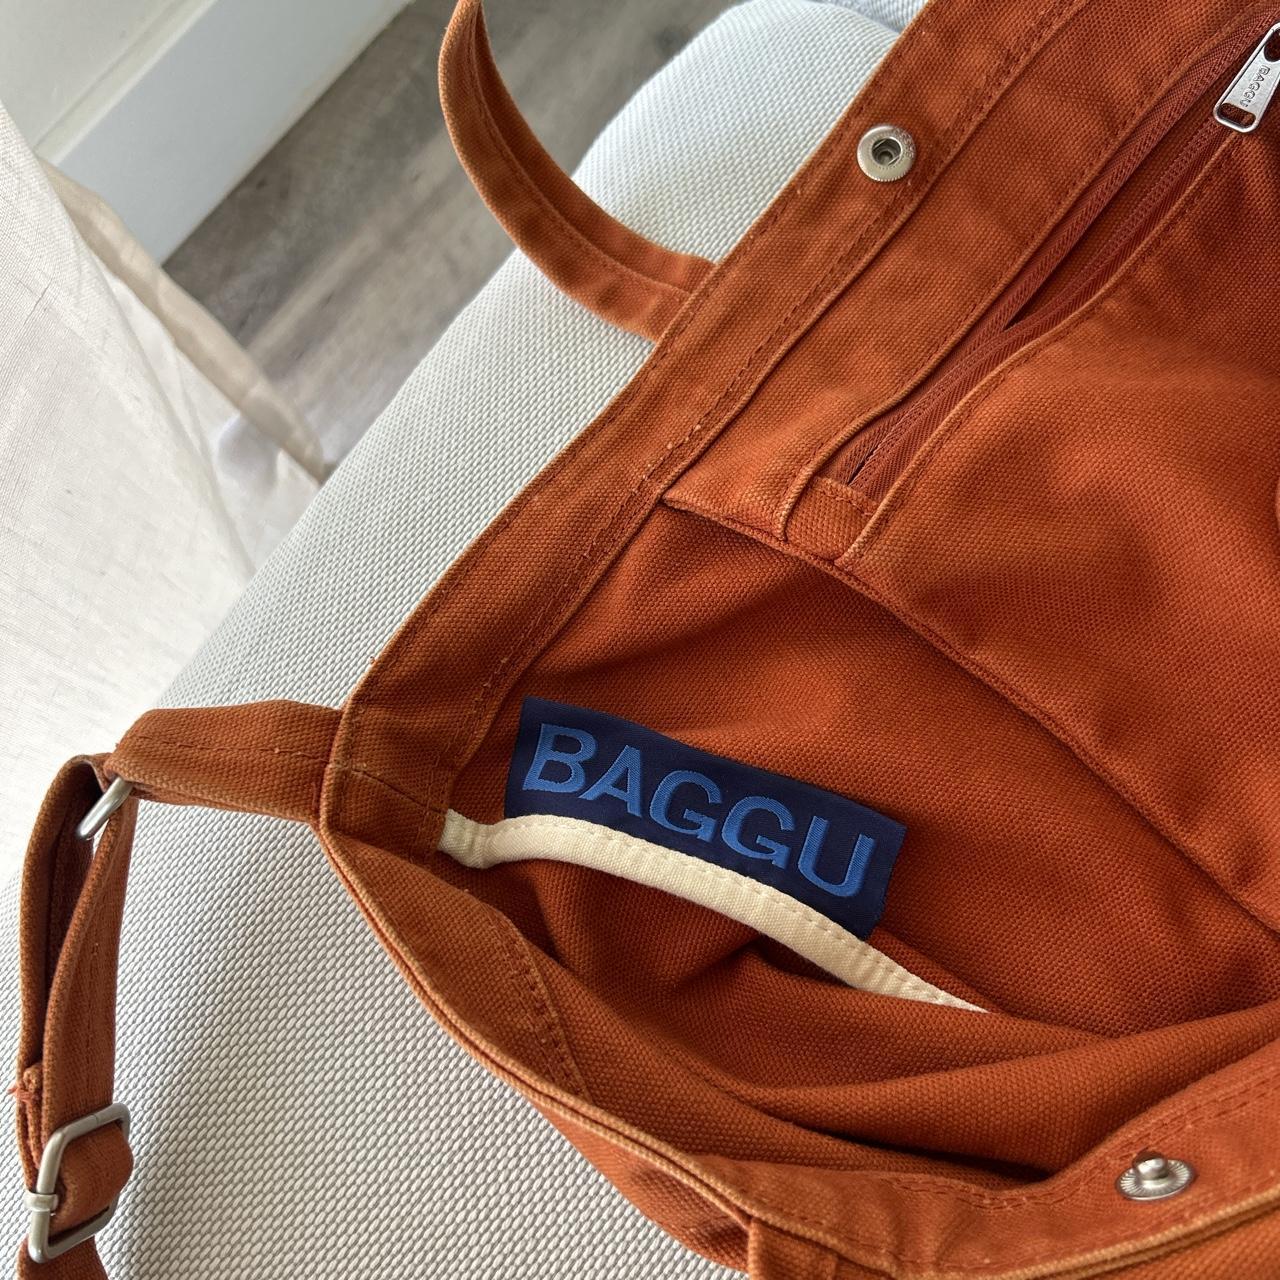 Baggu Women's Bag (3)